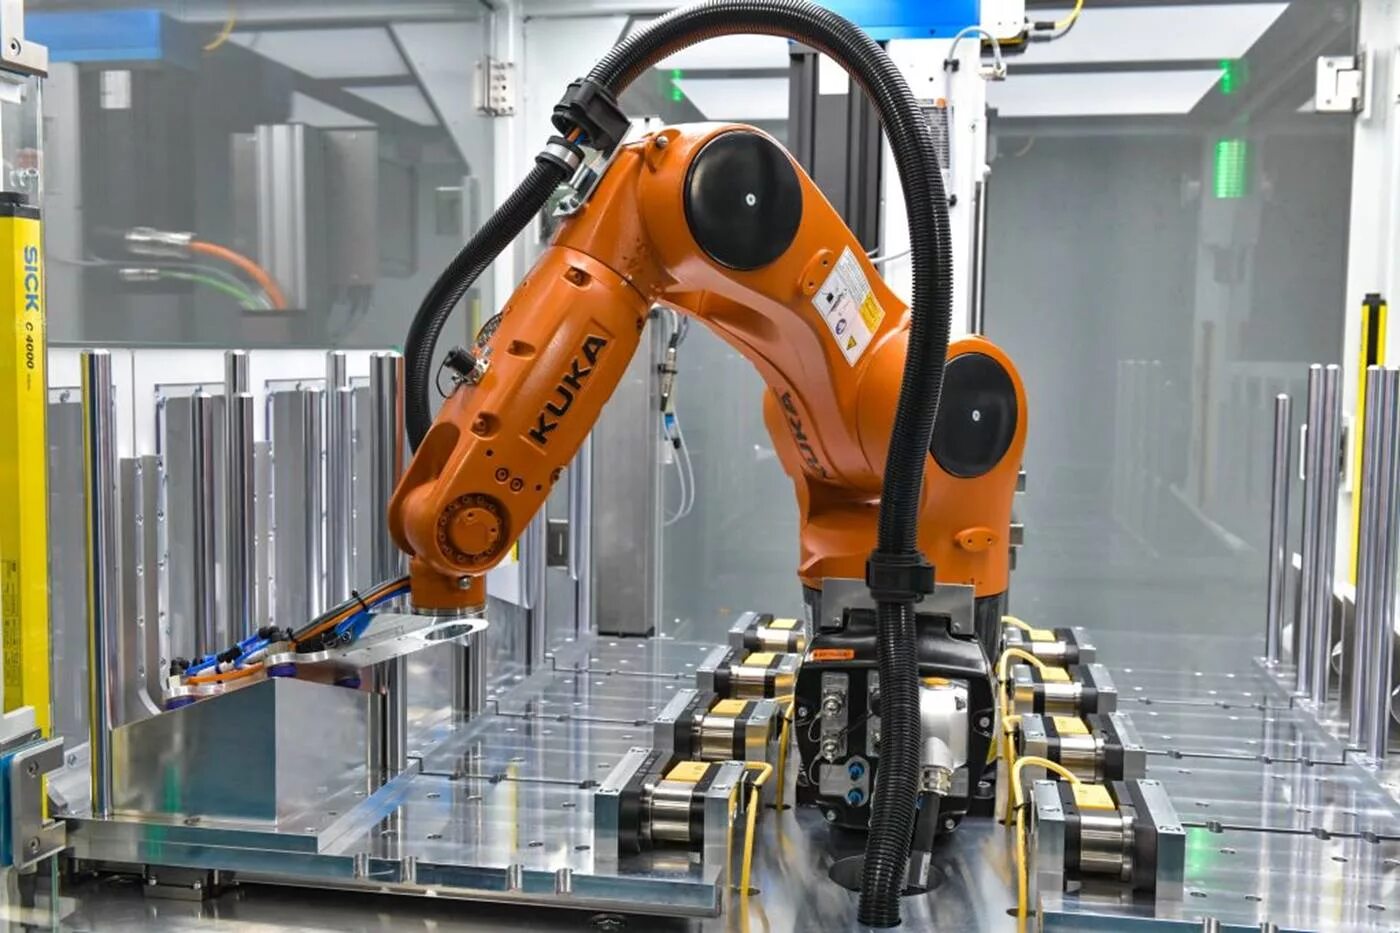 Kuka Robot конвейер. Первый промышленный робот kuka. Kuka kr AGILUS. Роботизированный манипулятор kuka AGILUS. Изготовление робота